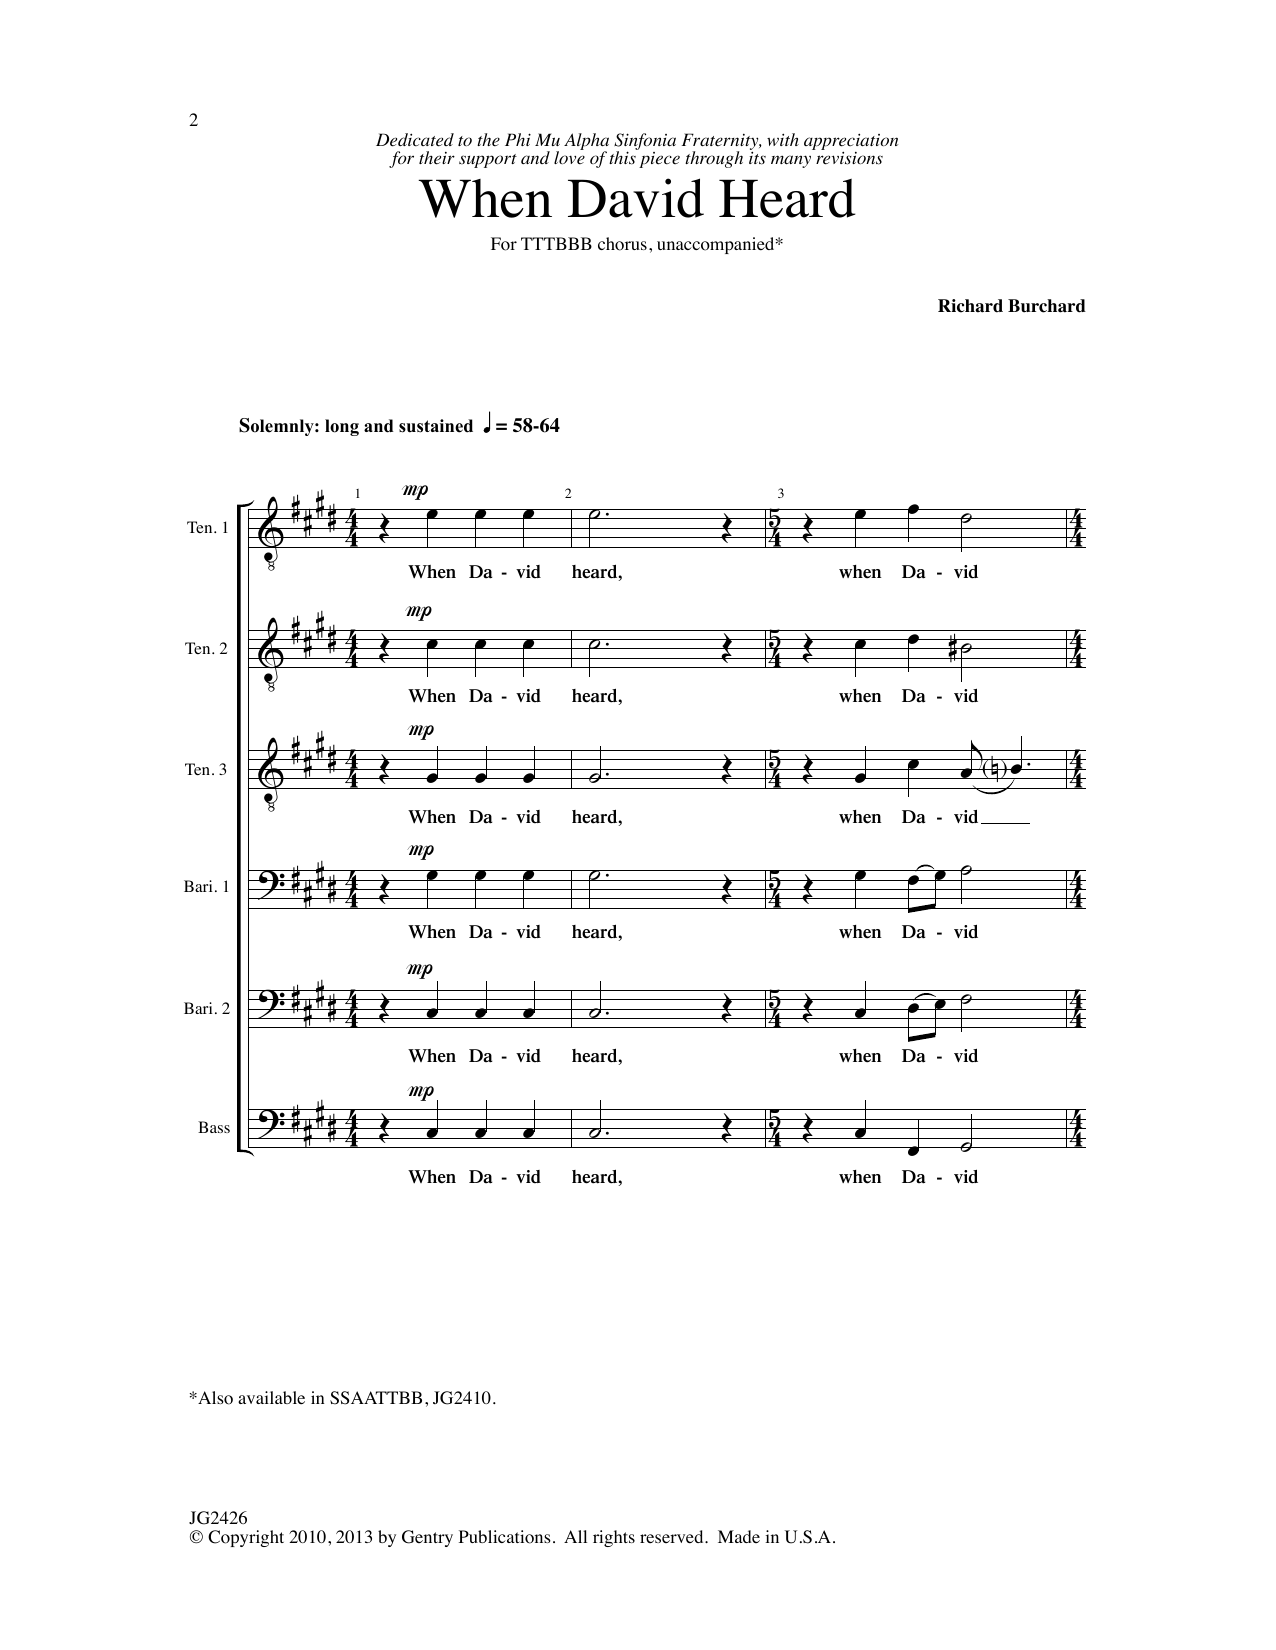 Download Richard Burchard When David Heard Sheet Music